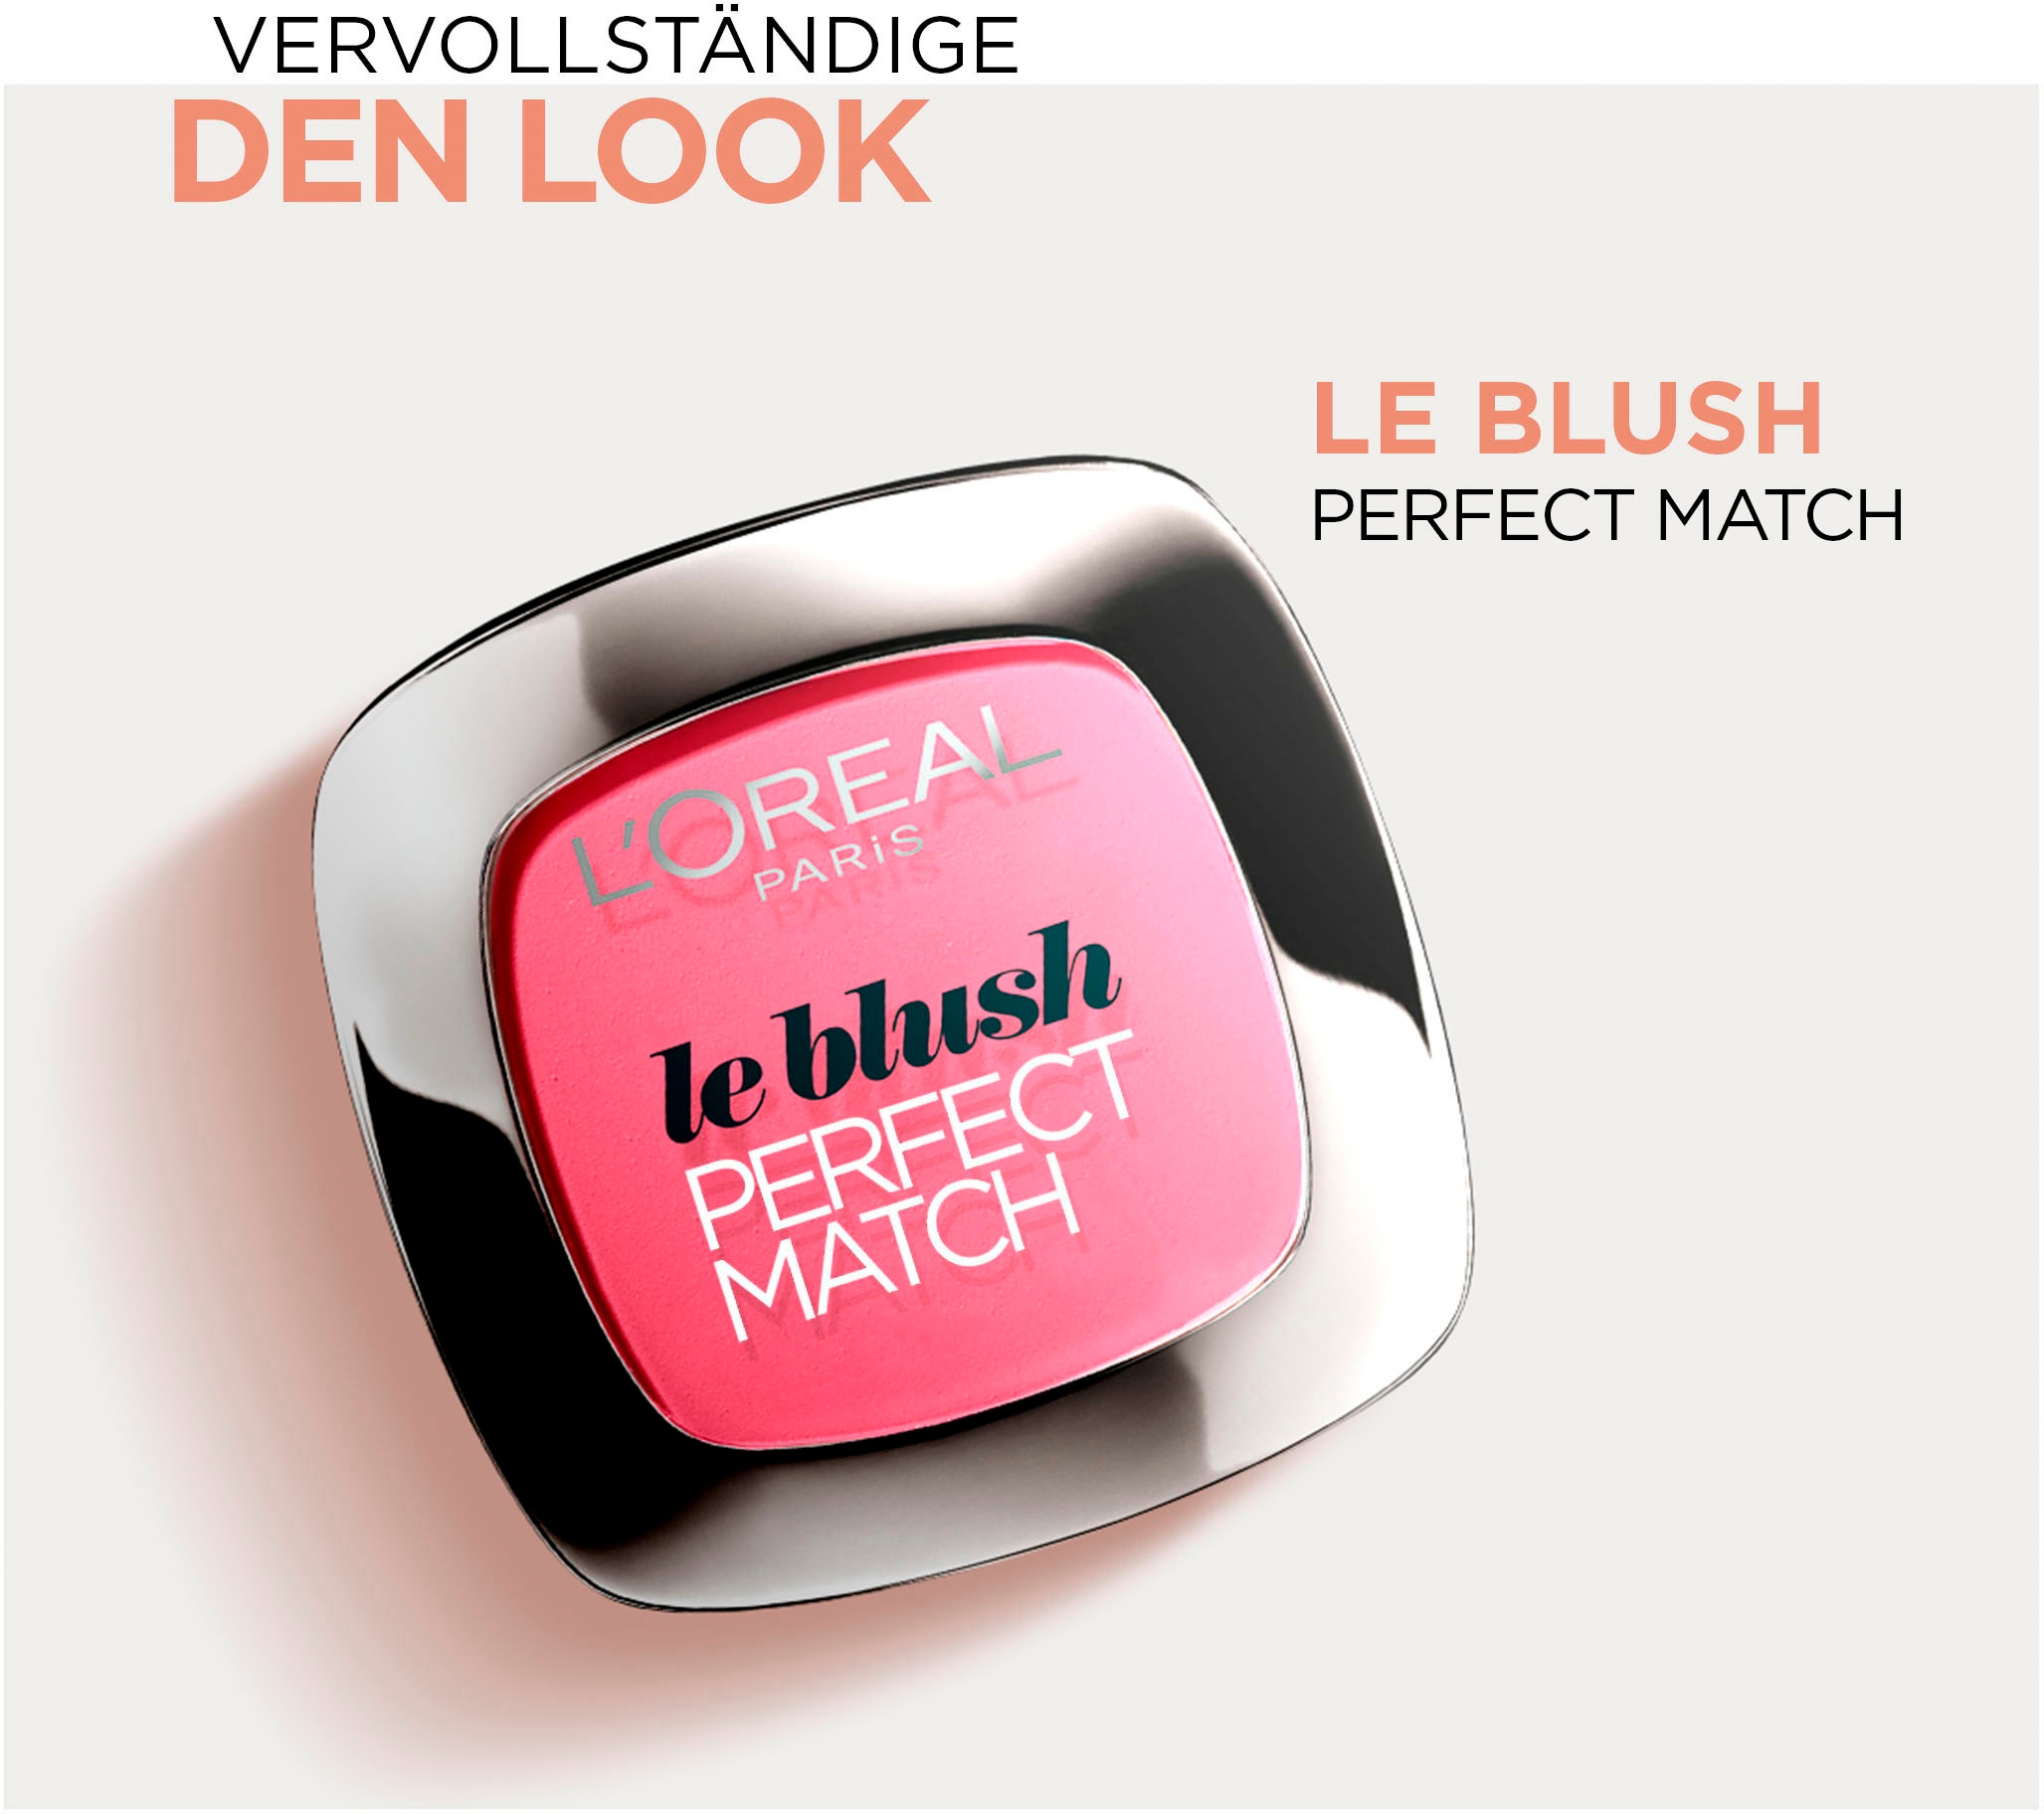 L'ORÉAL PARIS Foundation »Perfect Match Make-Up Doppelpack«